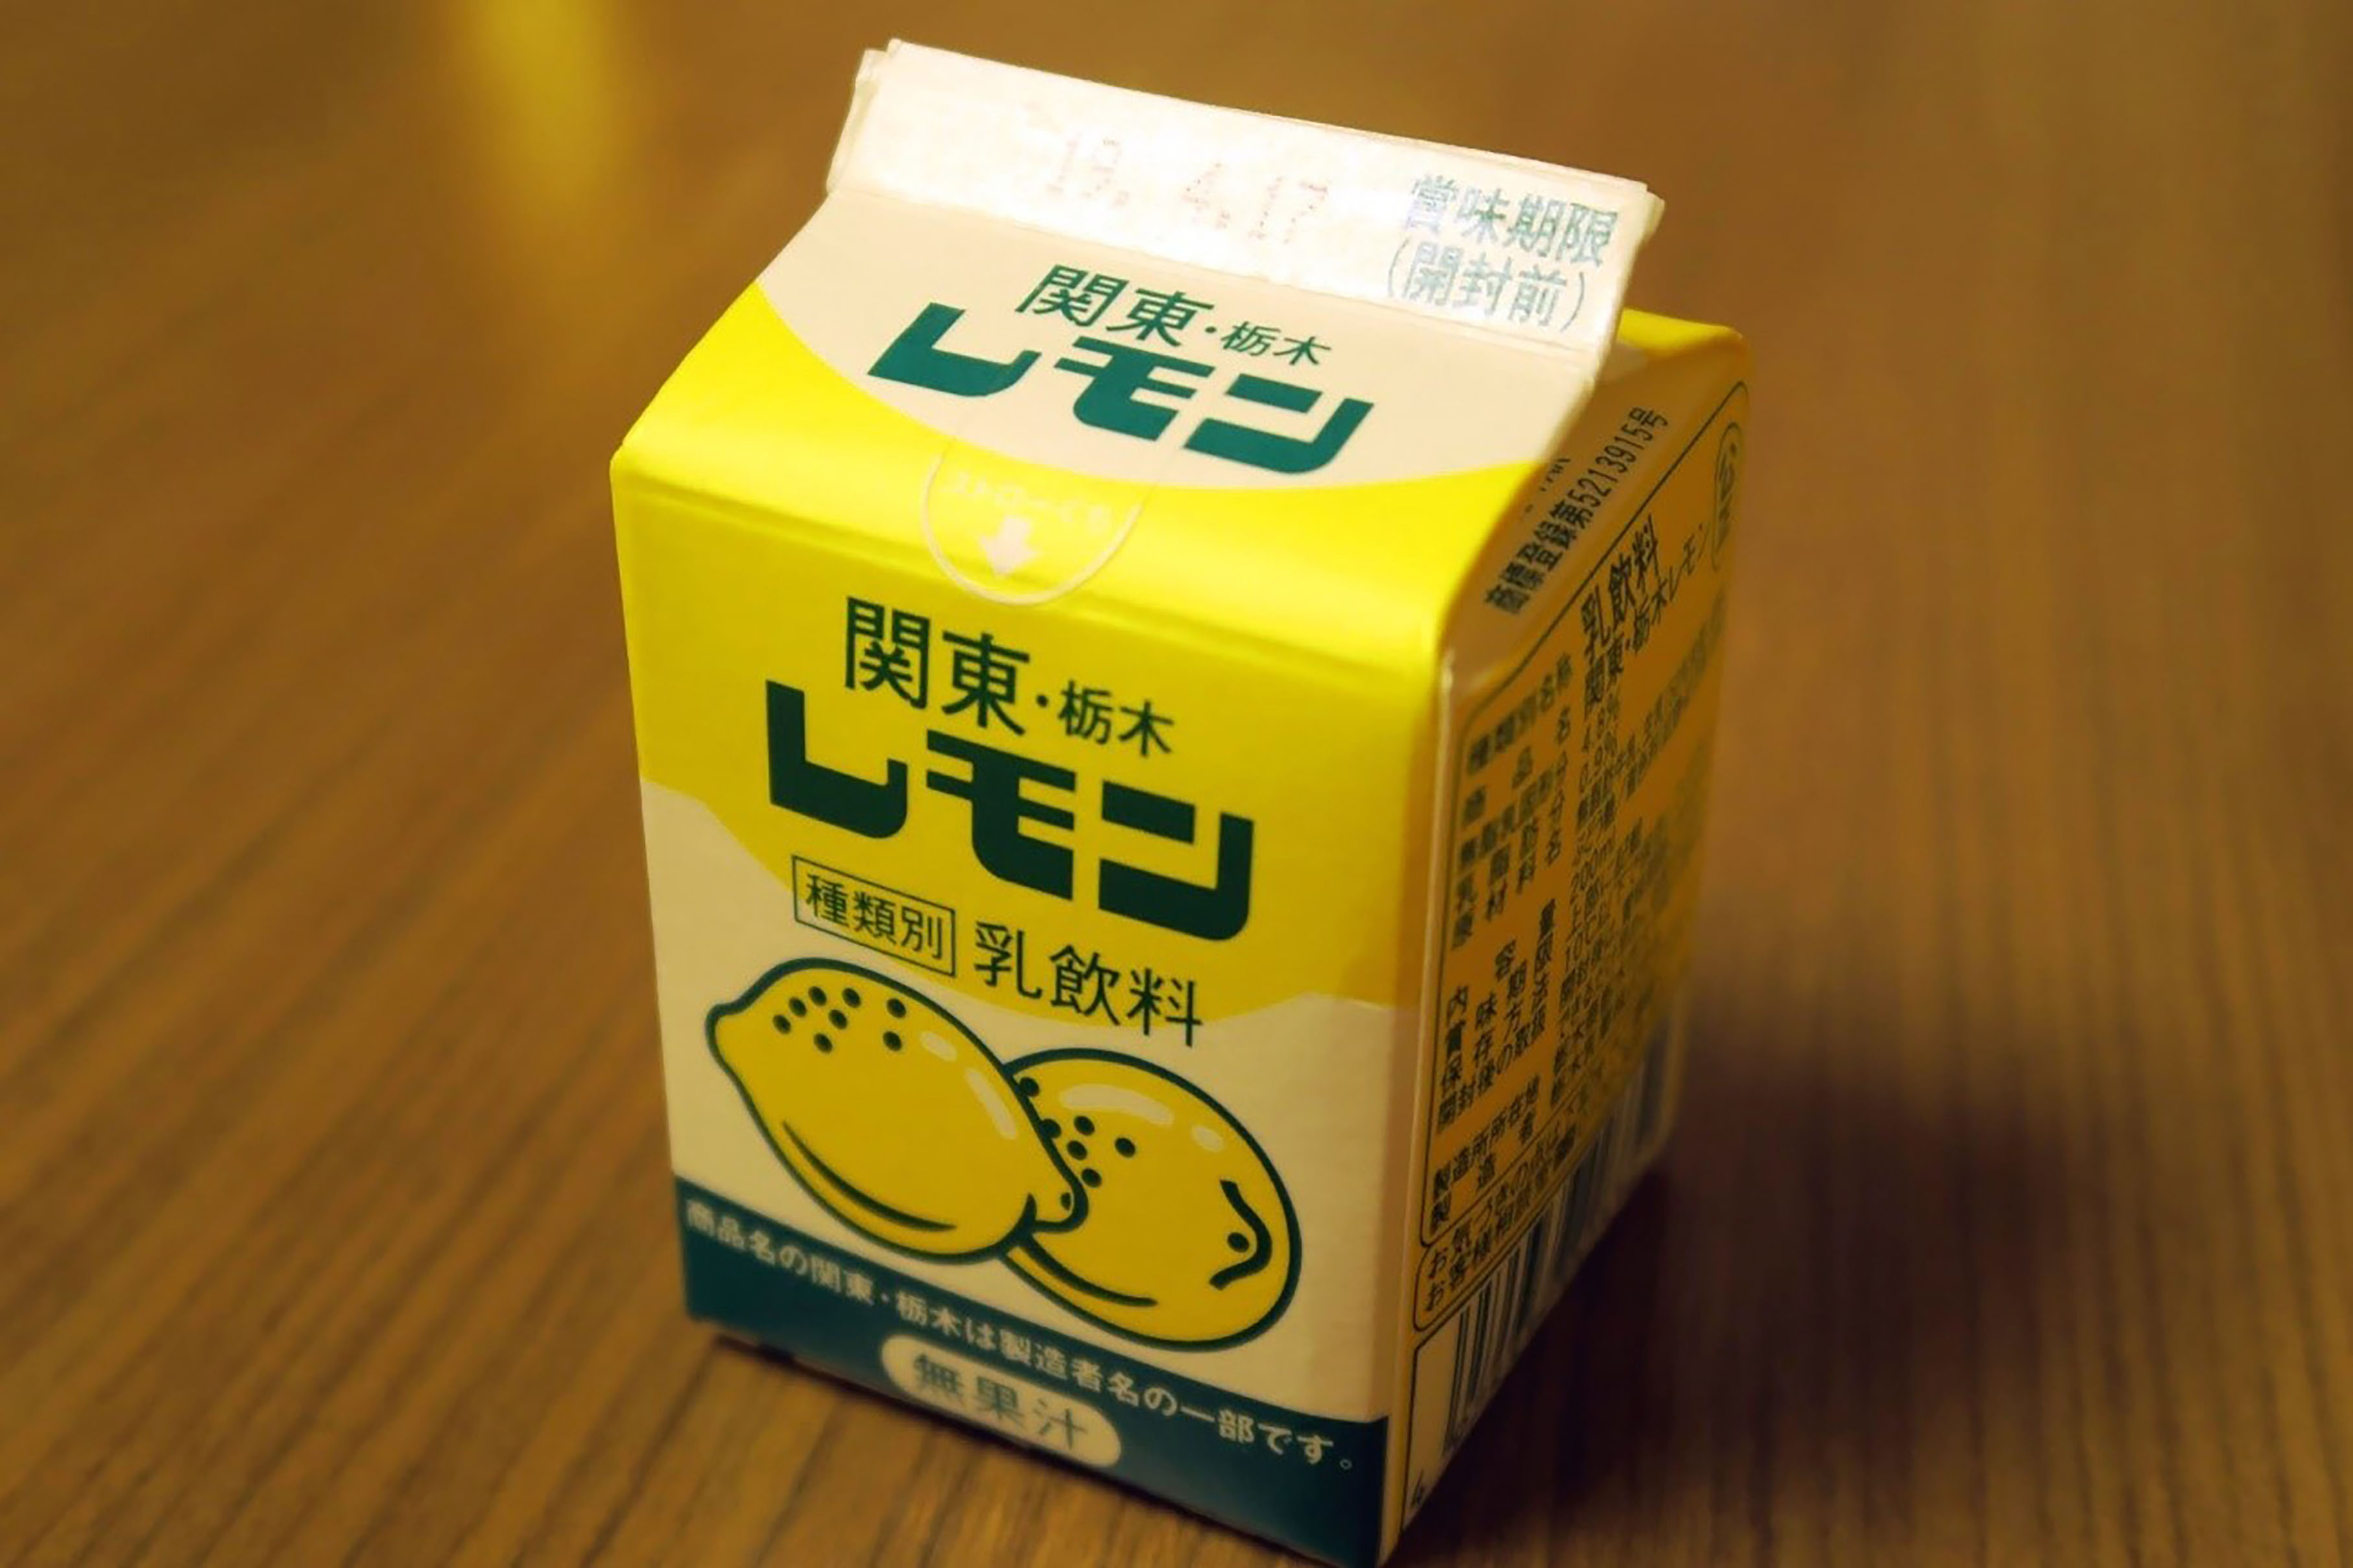 常識をくつがえす 優しいおいしさ 栃木県人が愛する レモン牛乳 の物語 Tabizine 人生に旅心を